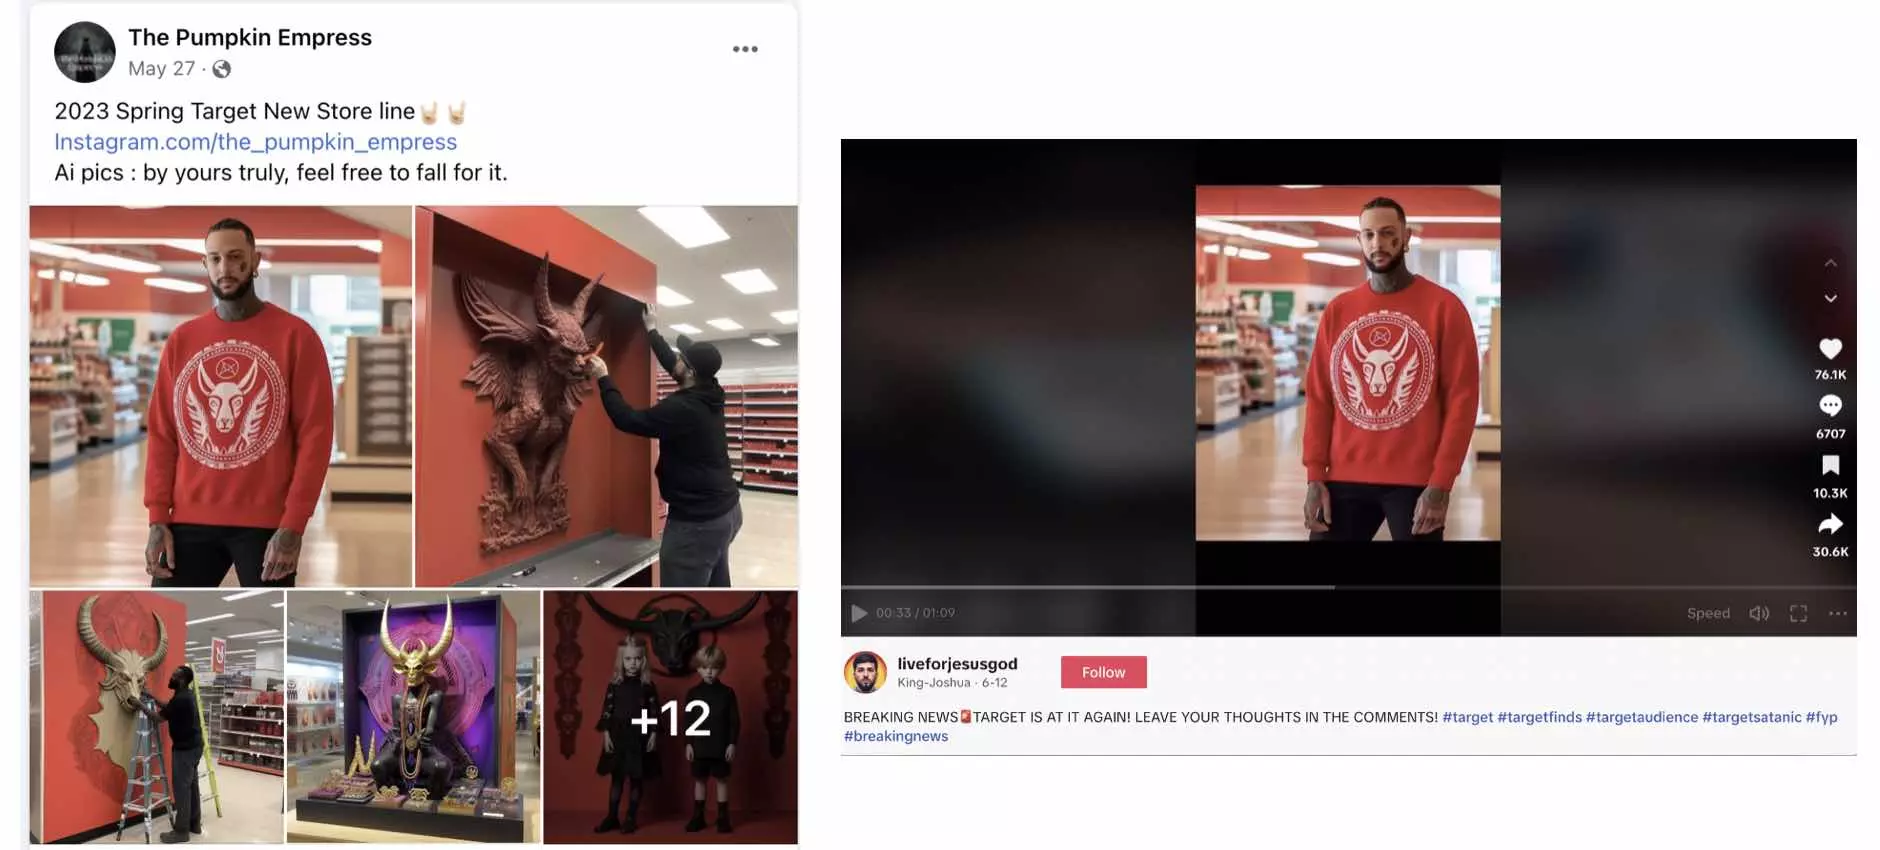 Imagem gerada por inteligência artificial foi usada em vídeo com fake news sobre supermercados Target no TikTok 